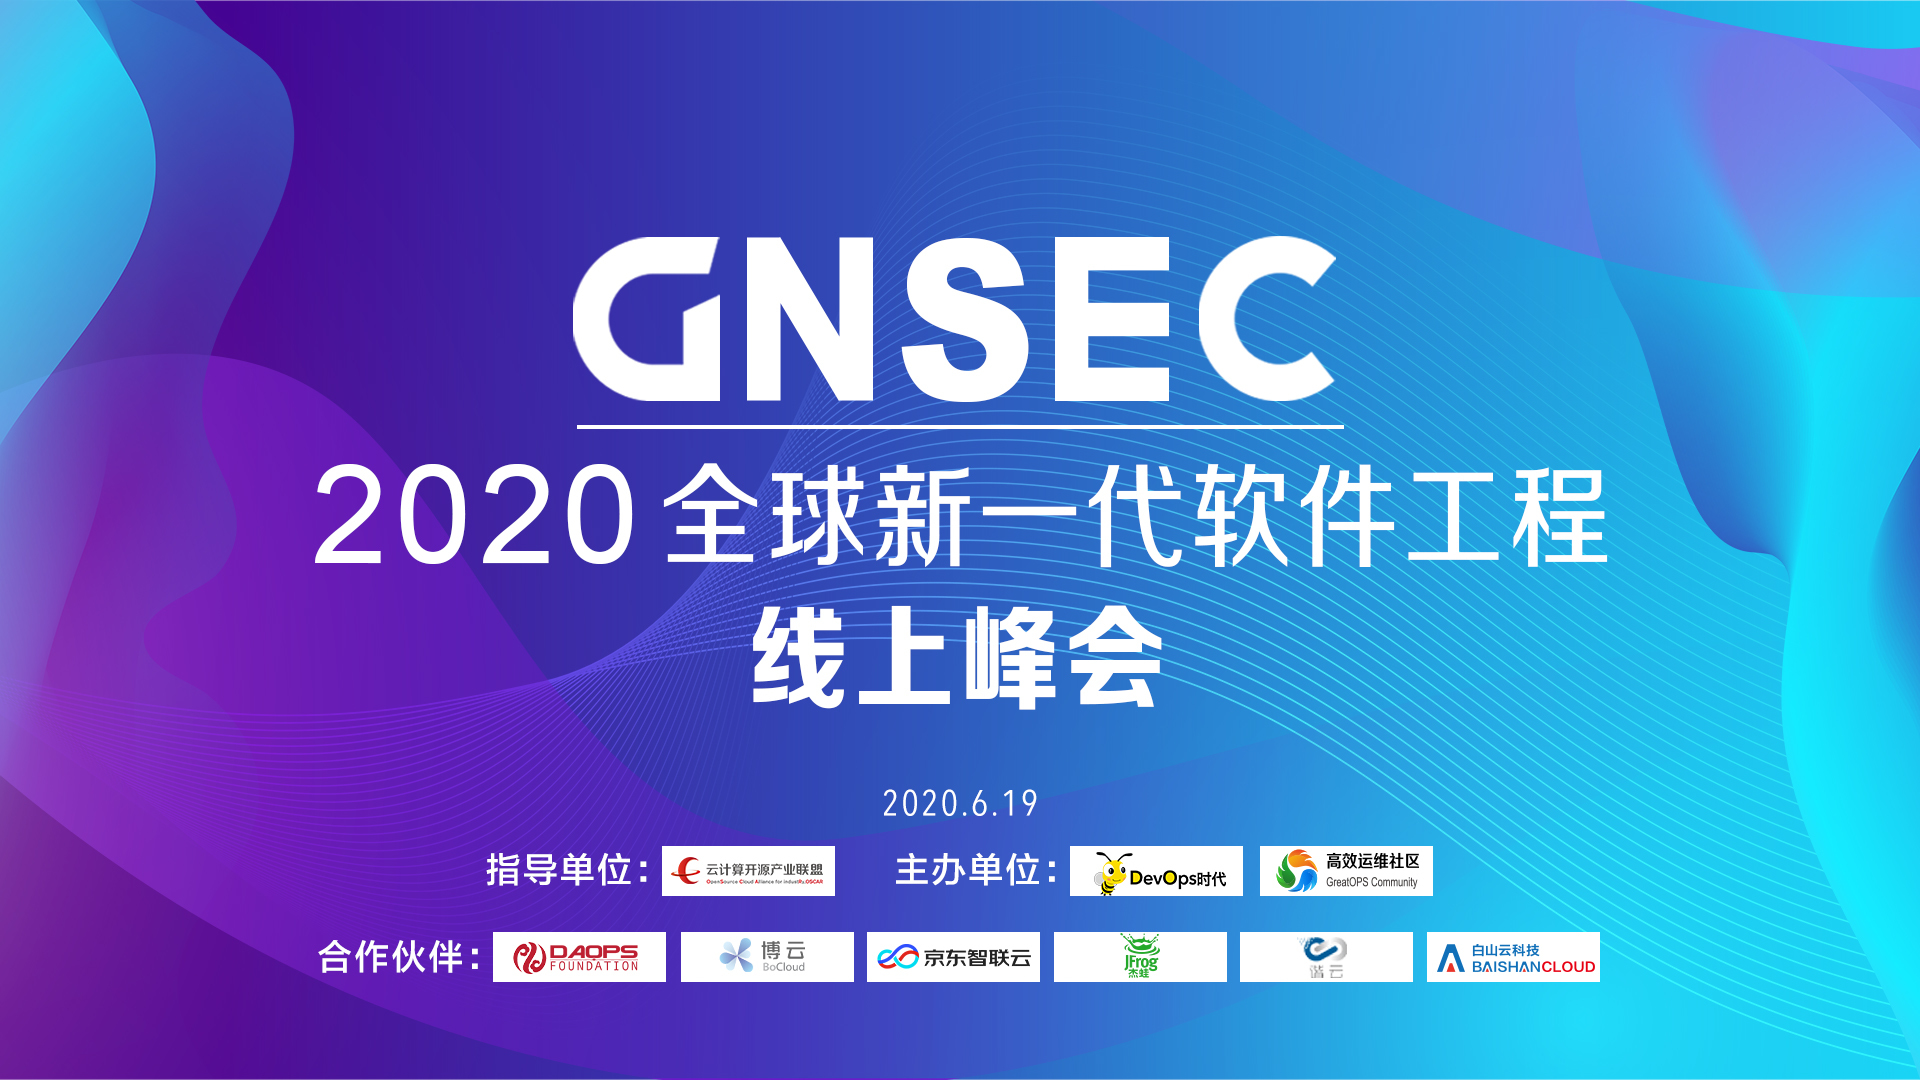 GNSEC 2020 全球新一代软件工程线上峰会